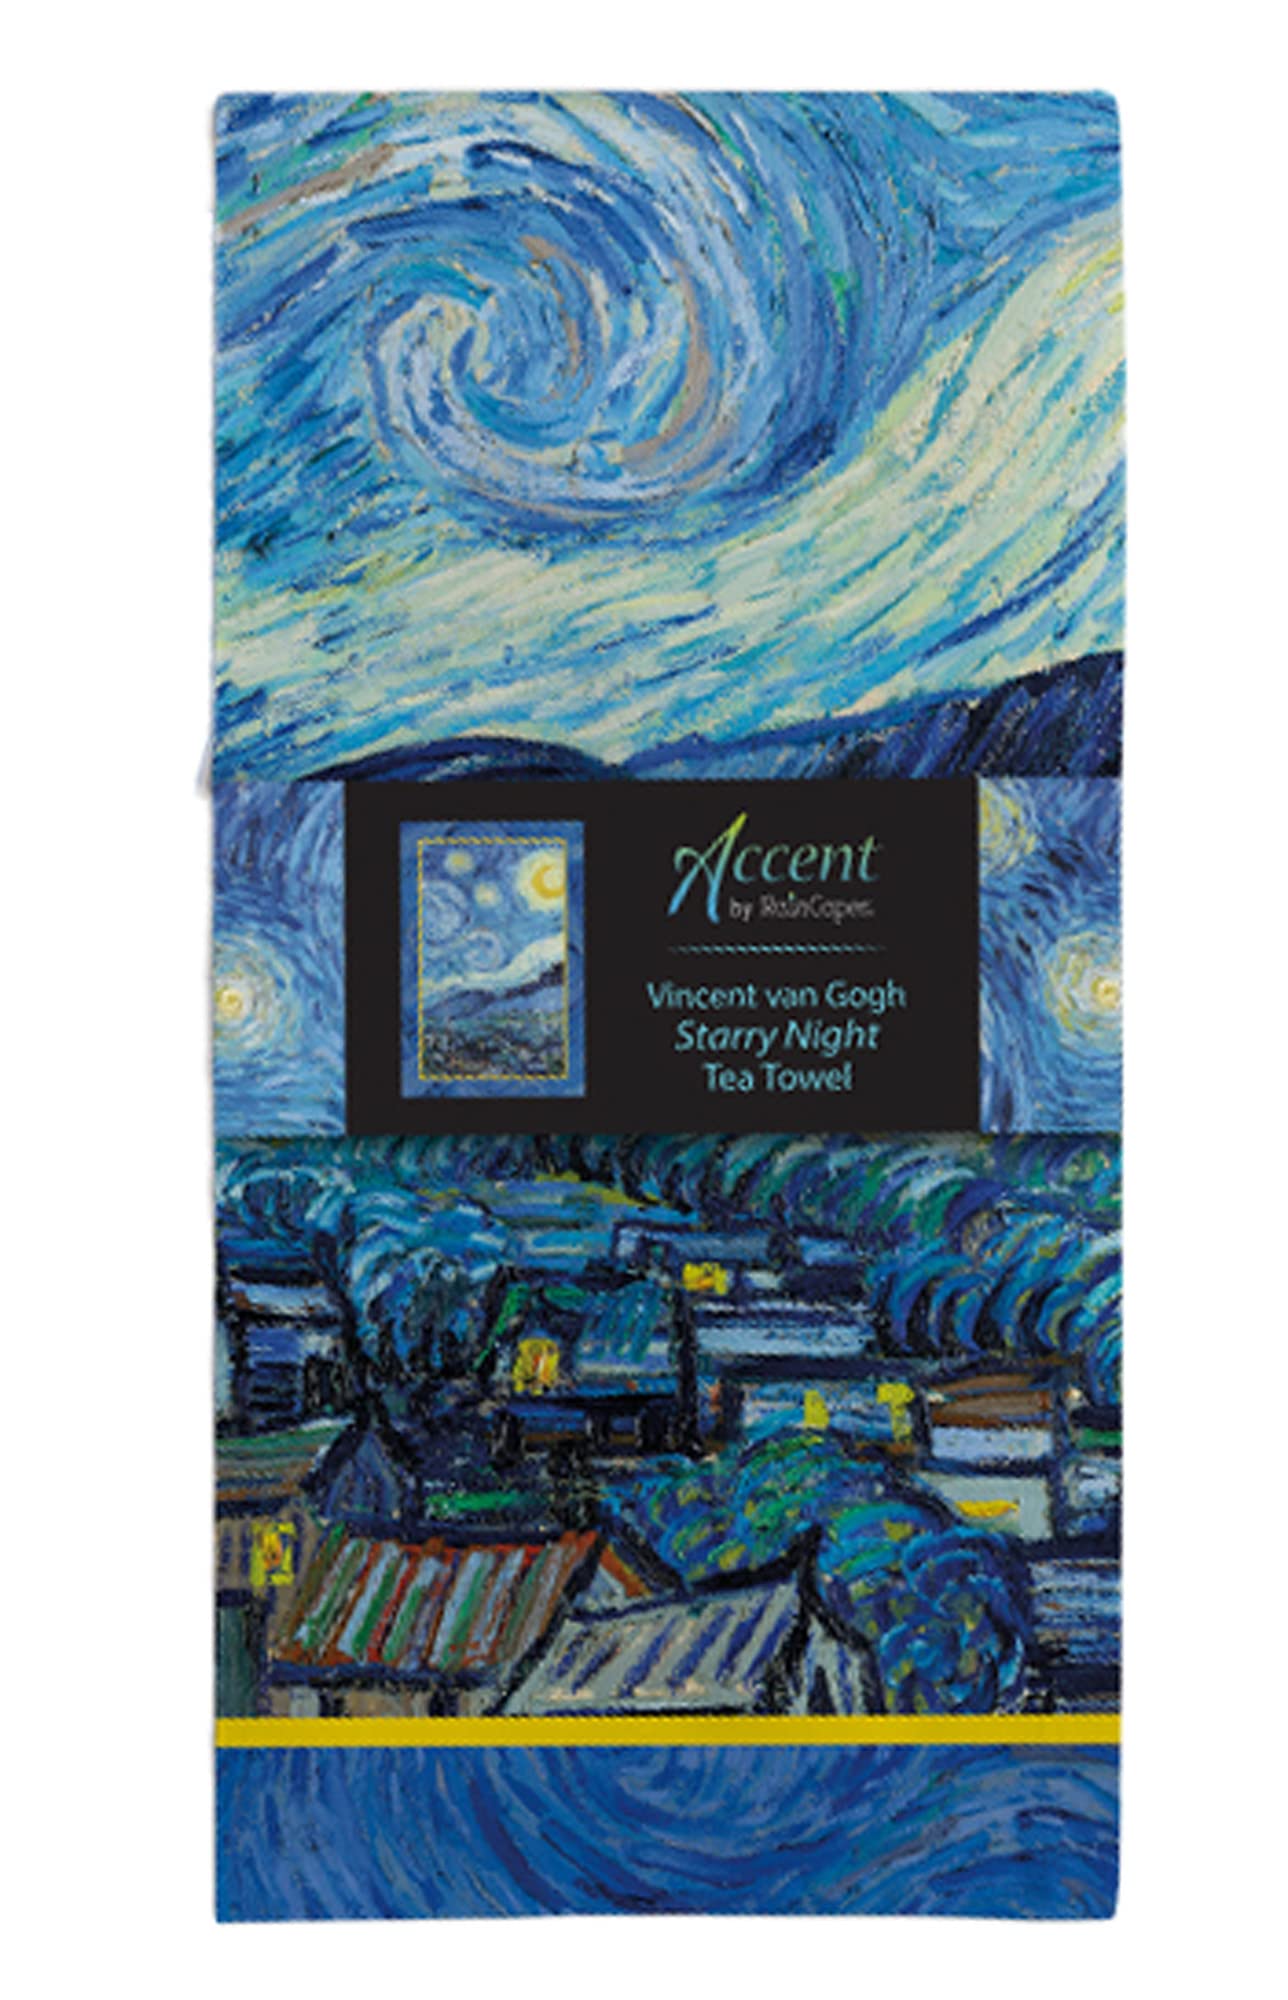 RainCaper Van Gogh Starry Night Tea Towels Kitchen Towels, 18 x 28 Inches, 1 CT | 100% Cotton Super Soft and Absorbent Dish Towels